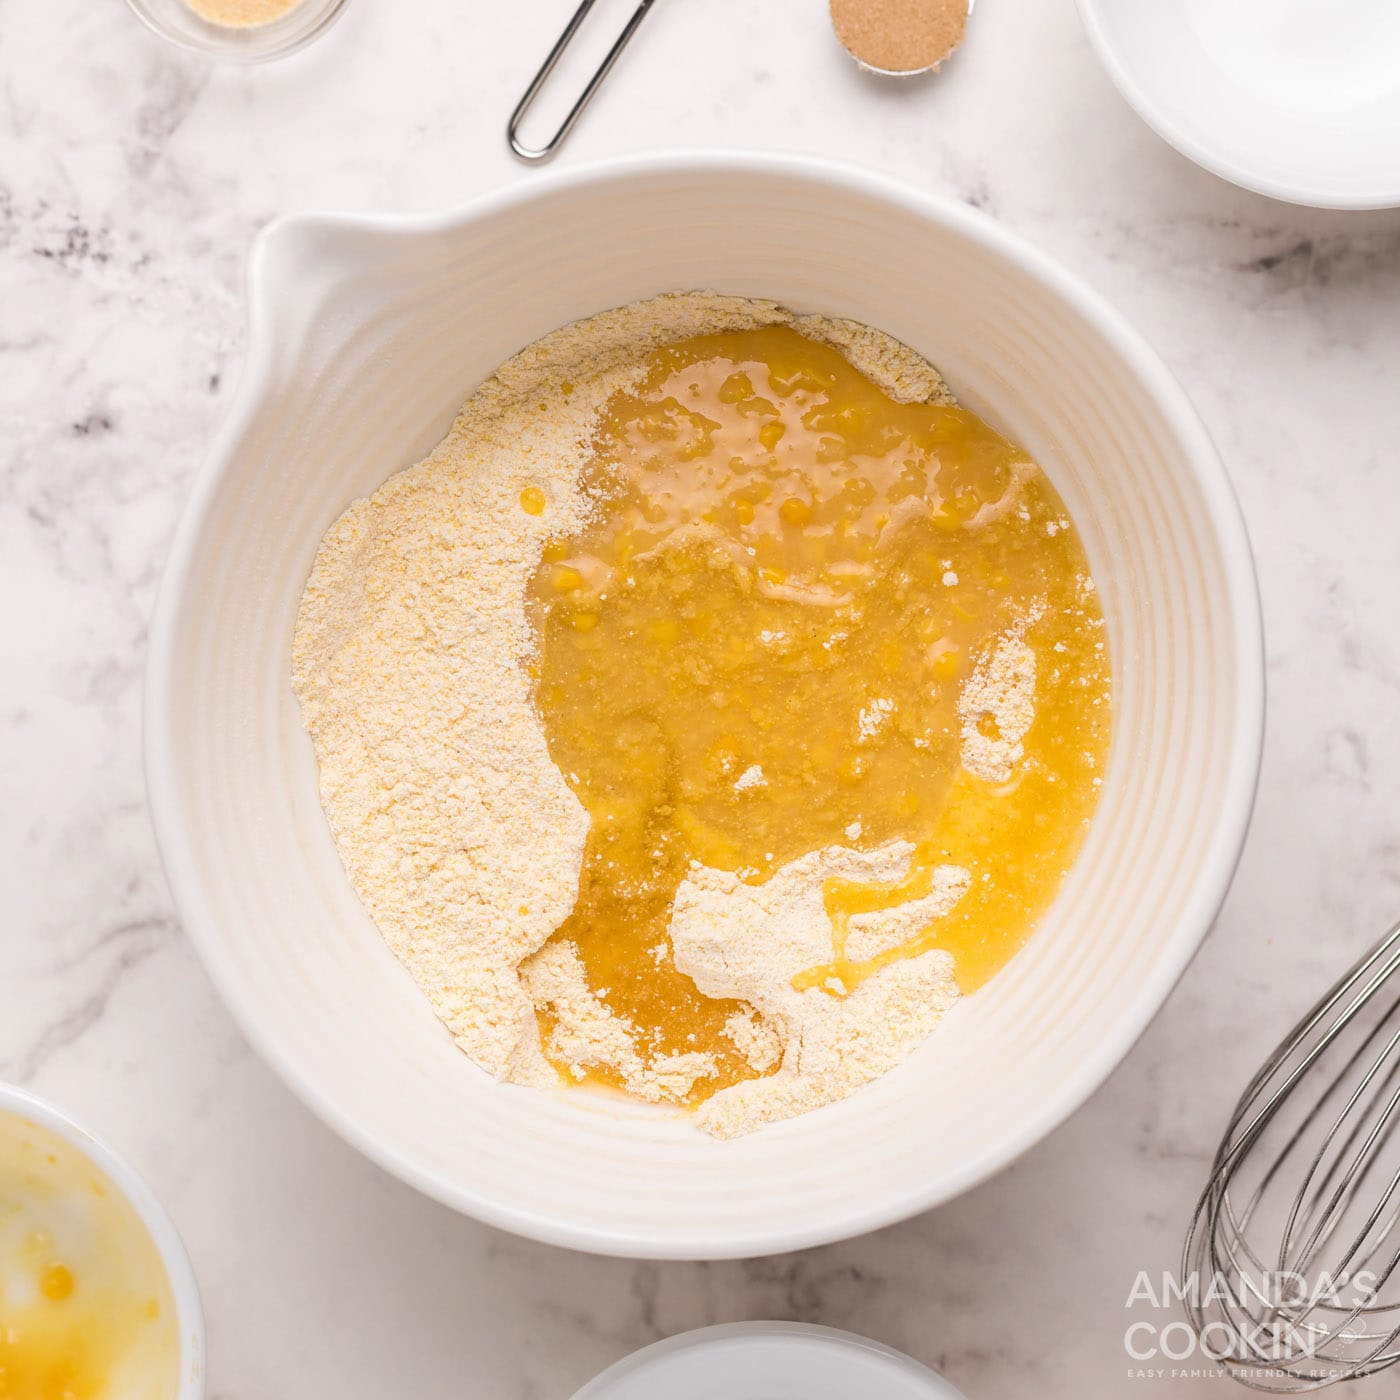 cream corn and canola oil adding to cornbread mixture in bowl